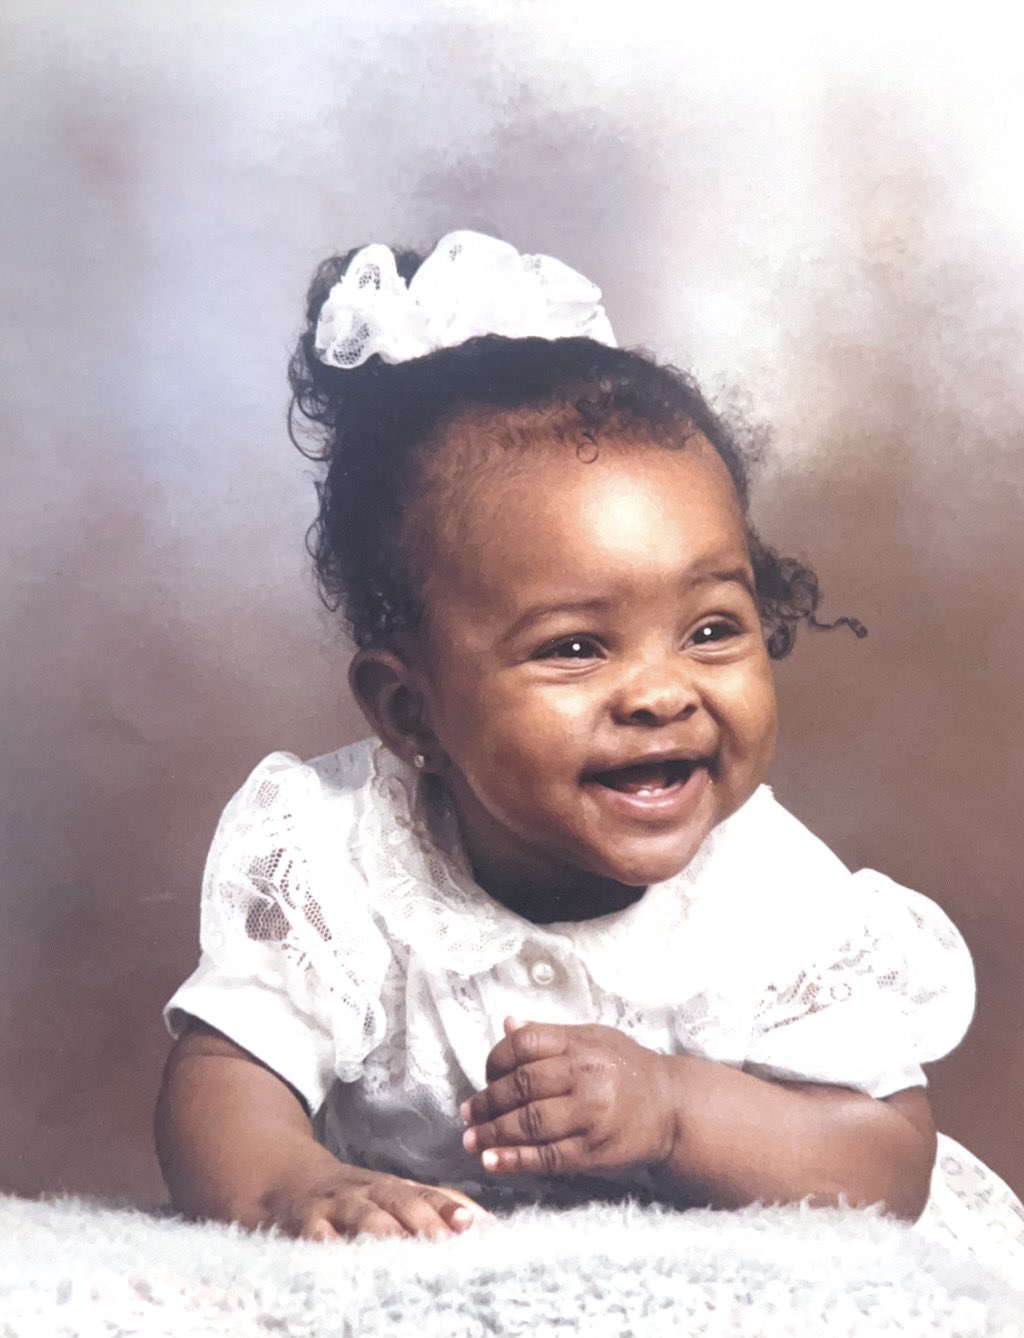 Ebony Obsidian as a baby